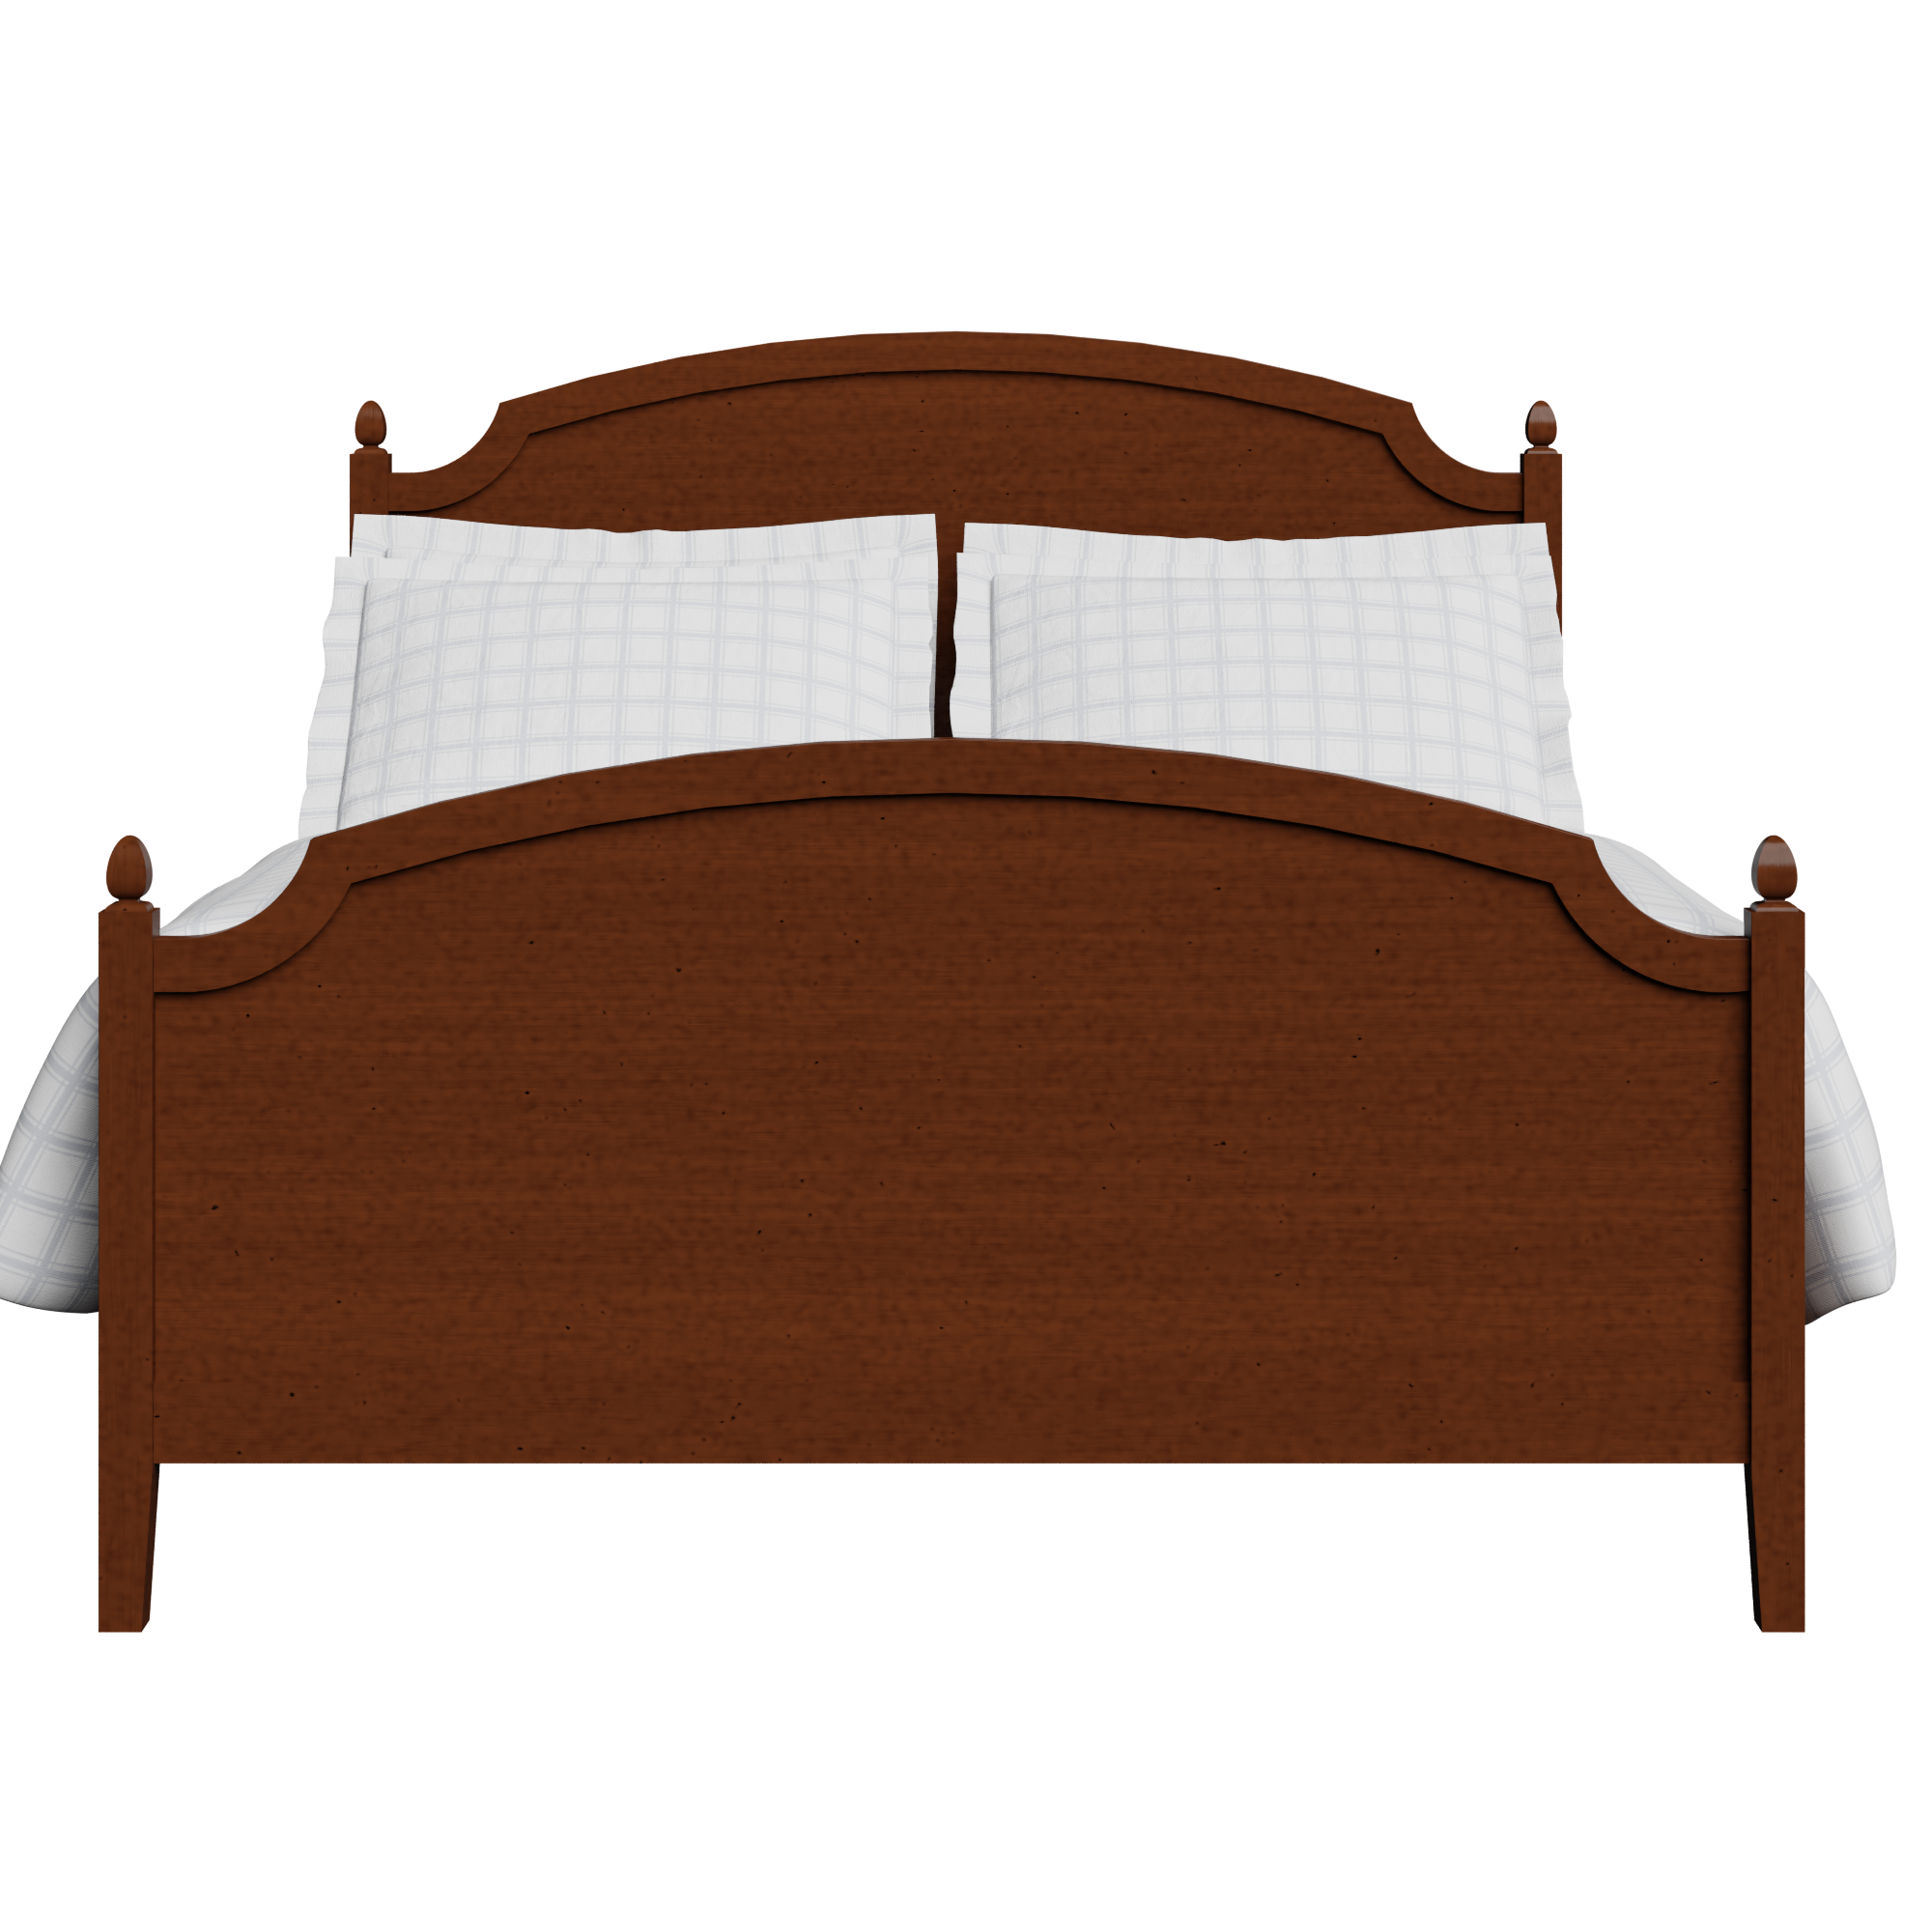 Kipling wood bed in dark cherry